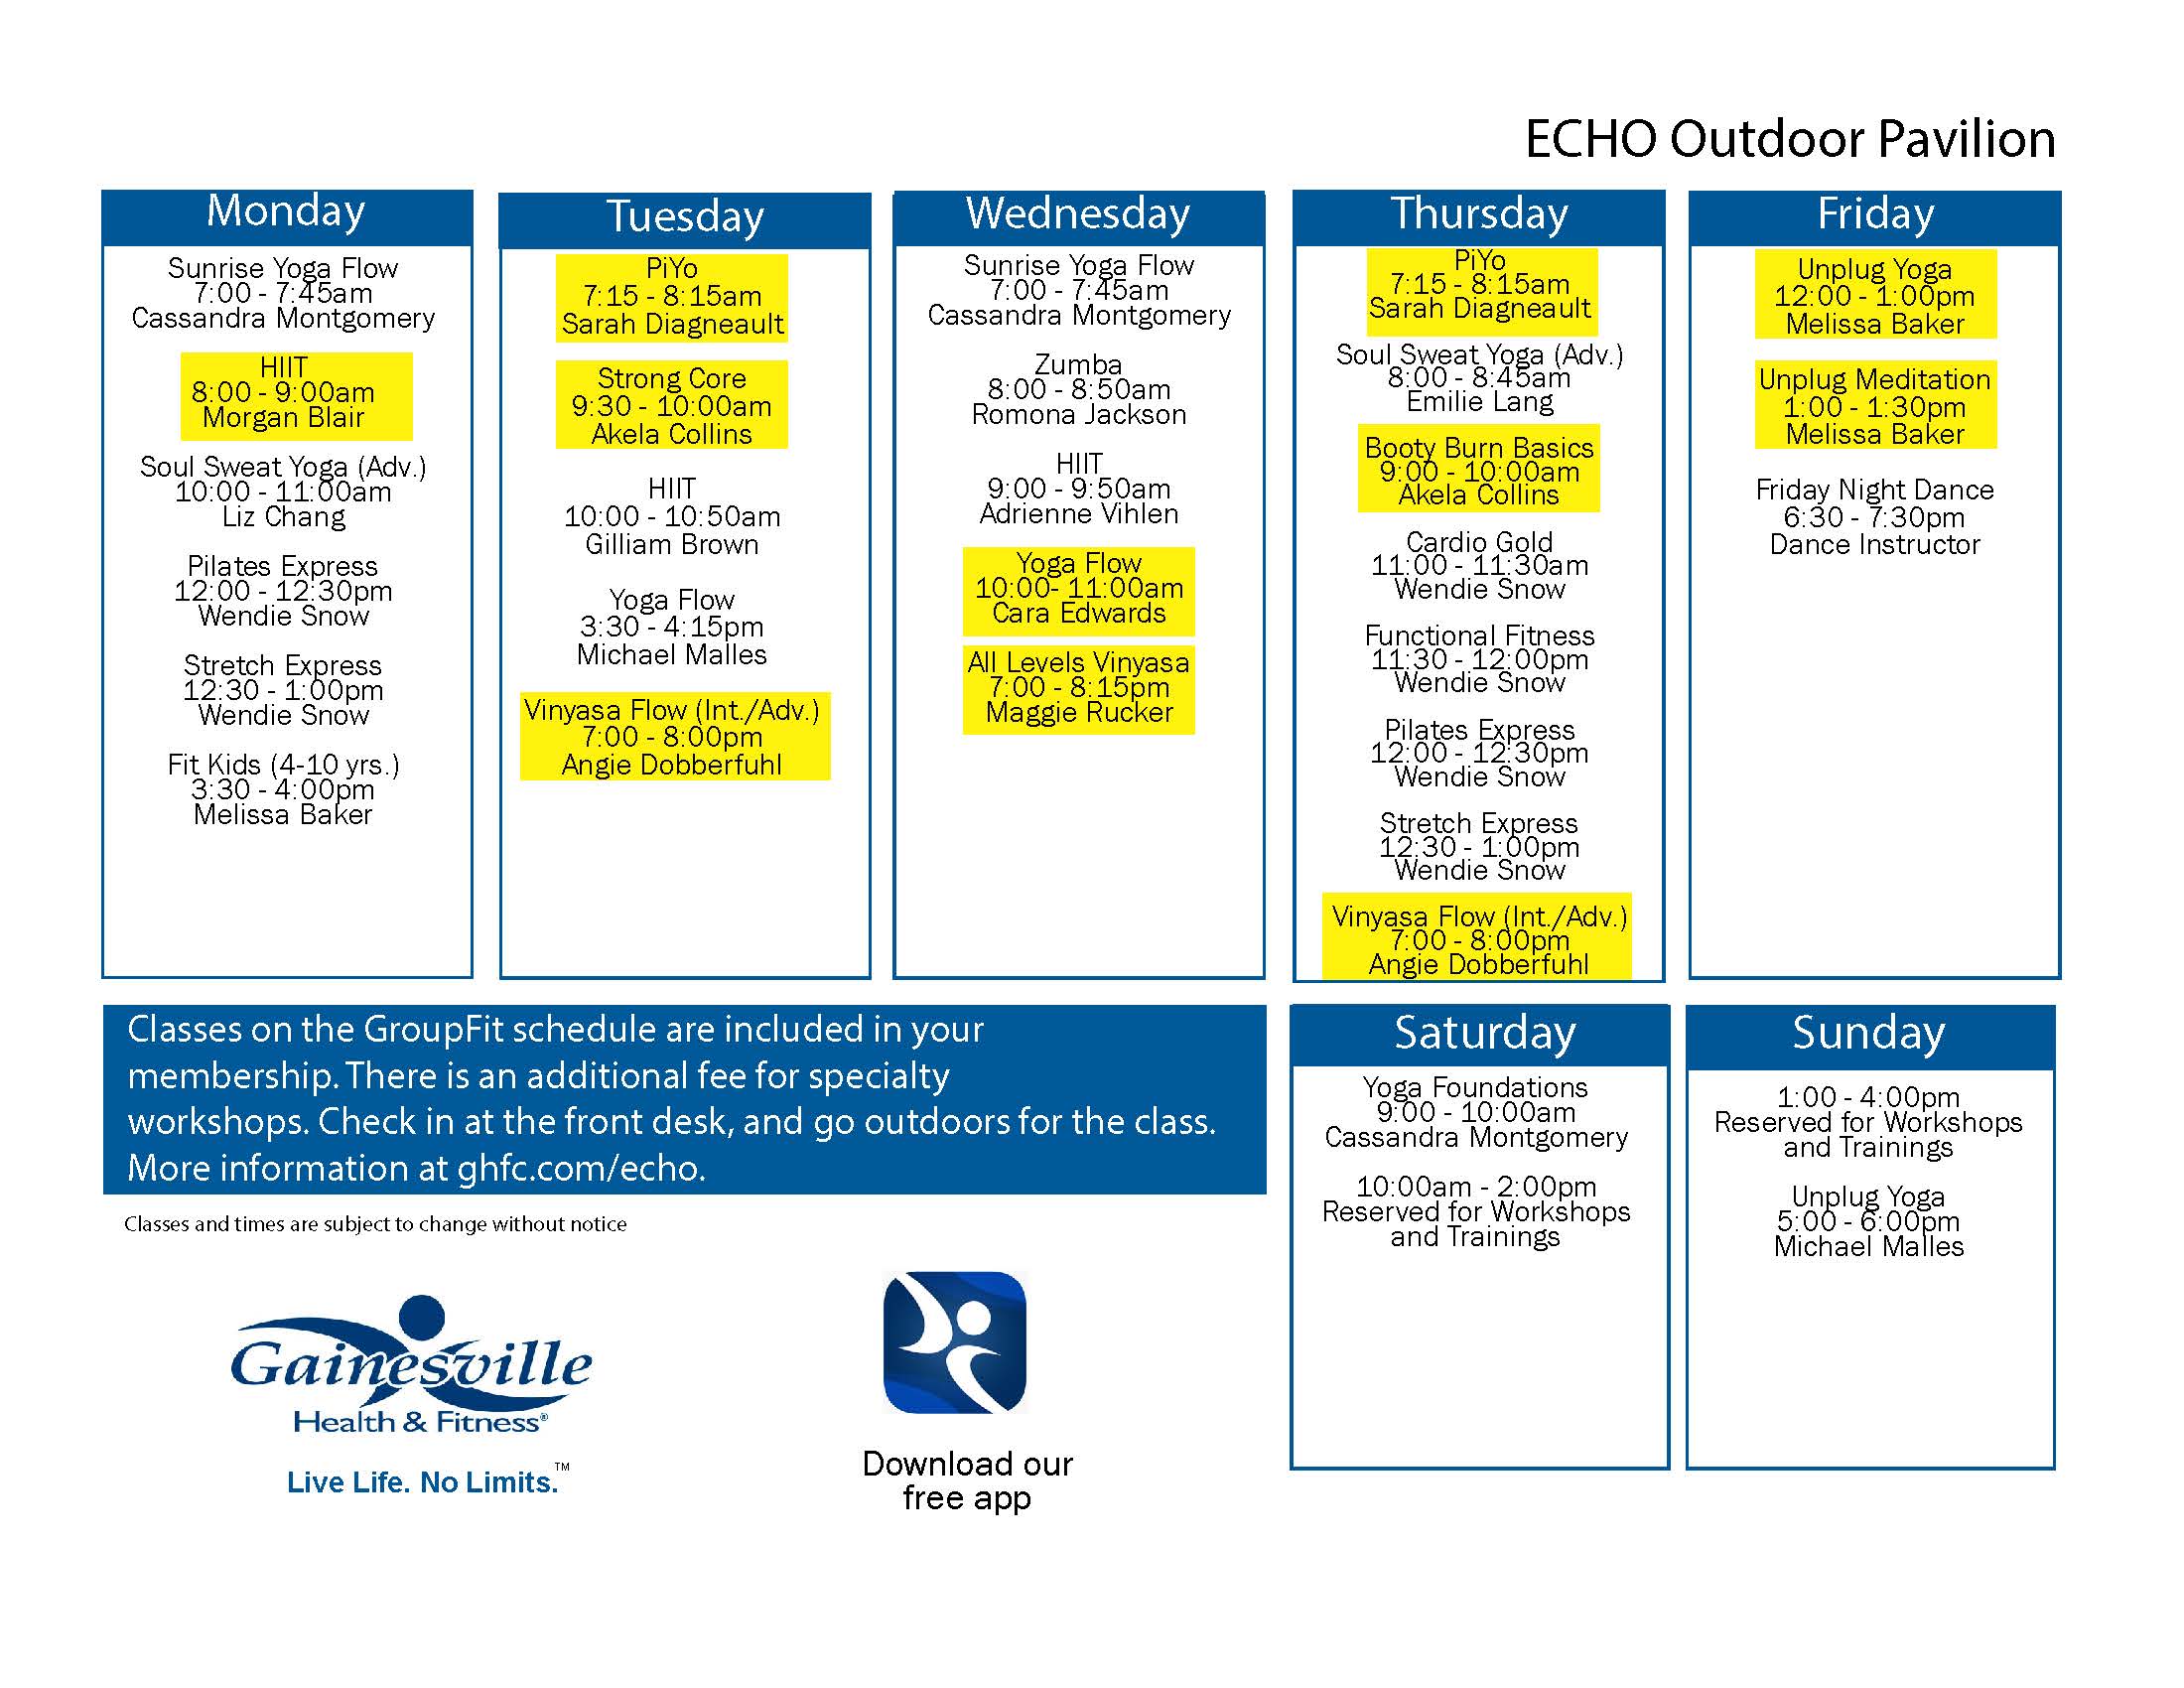 Echo outdoor group schedule